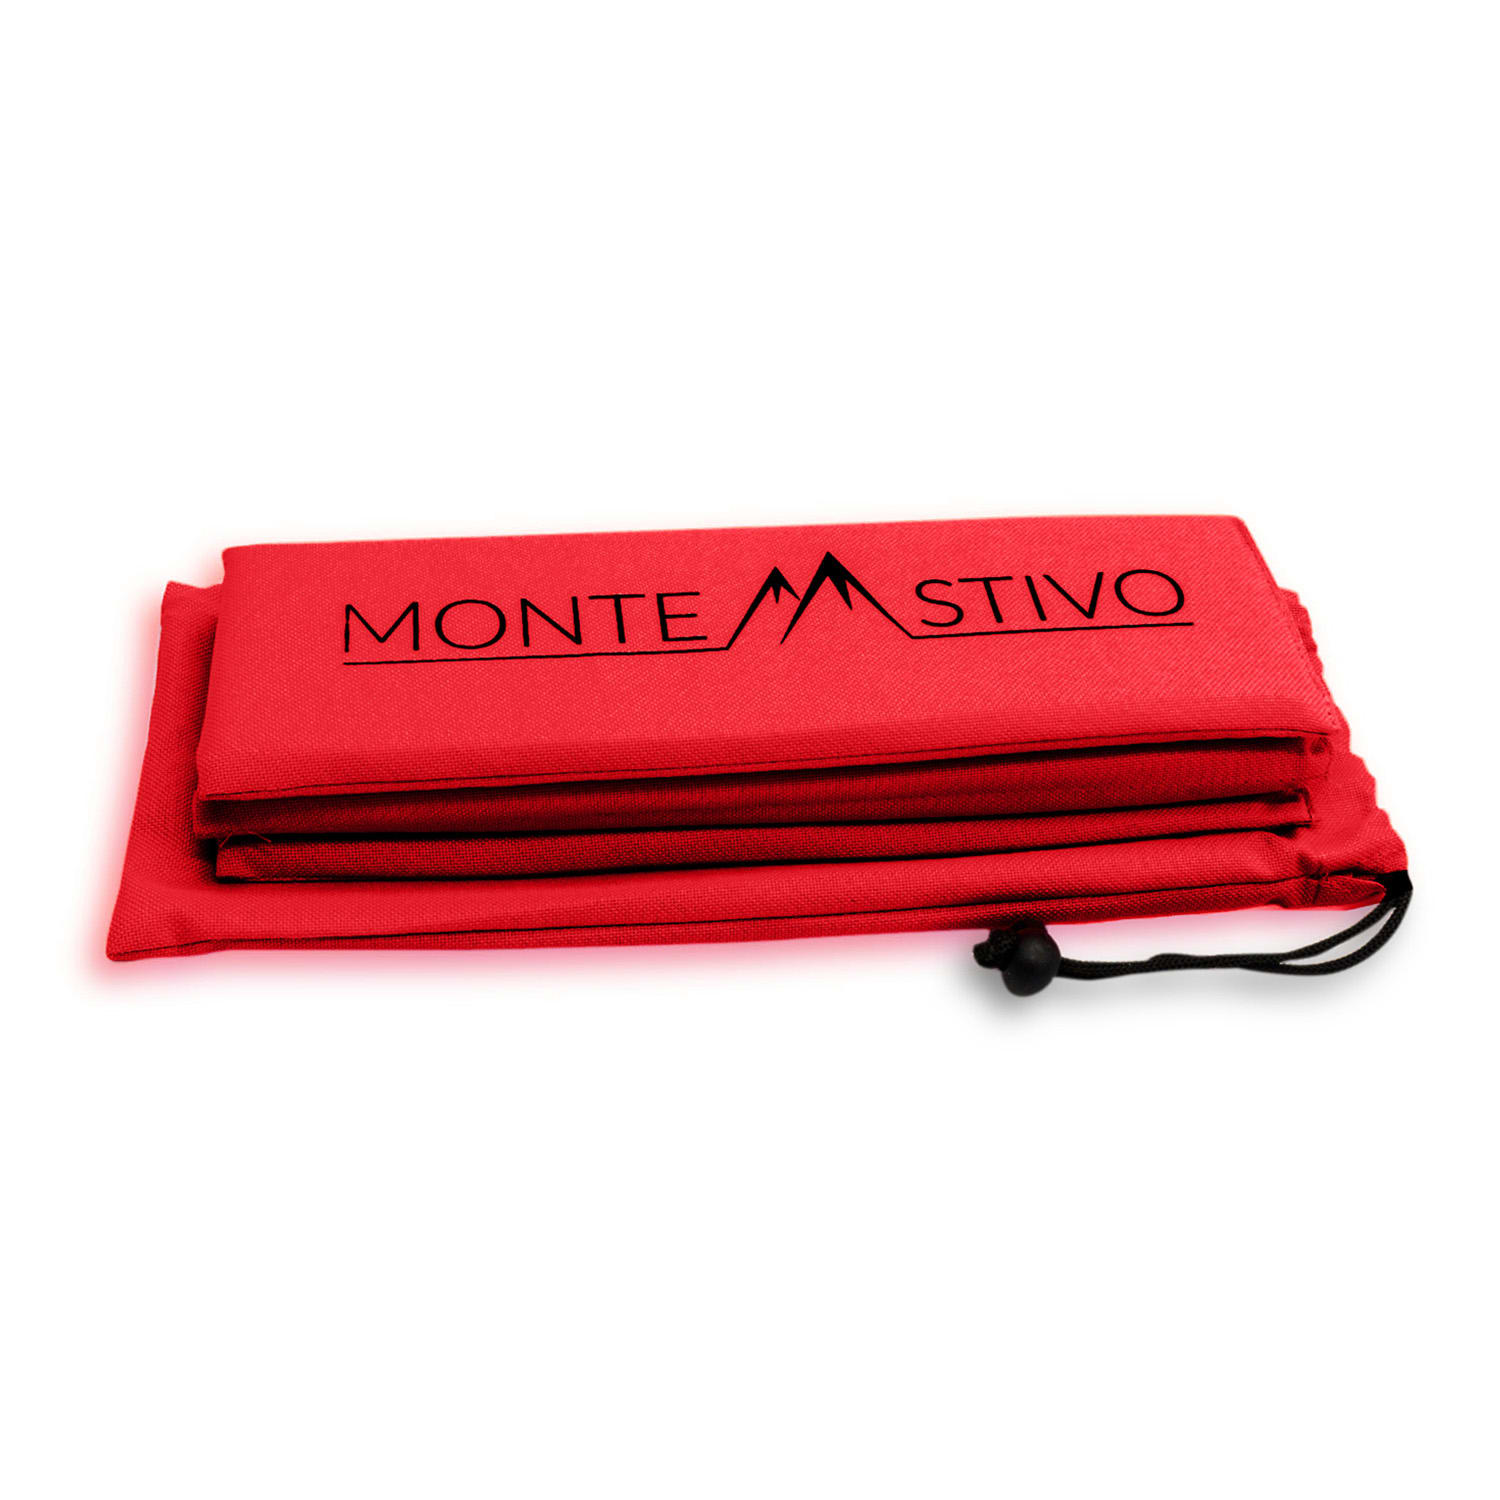 Levně Monte Stivo Aspern, podložka na sezení, 30 × 40 cm, skládací, polyesterová tkanina, včetně ochranného krytu